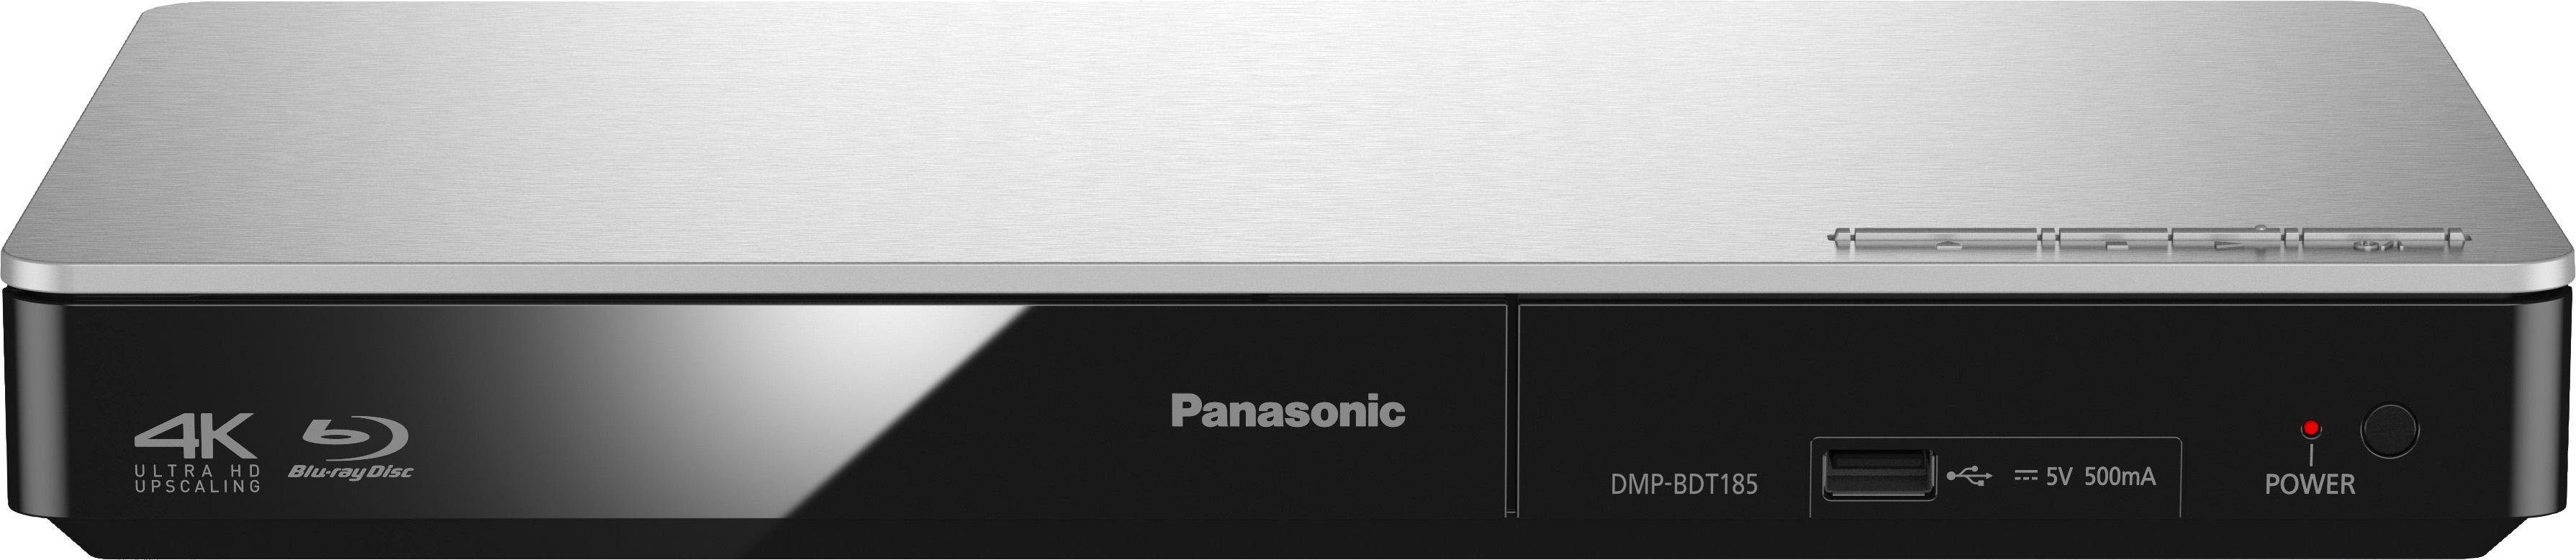 Panasonic DMP-BDT184 Upscaling, / 4K Blu-ray-Player silberfarben (Ethernet), Schnellstart-Modus) (LAN DMP-BDT185